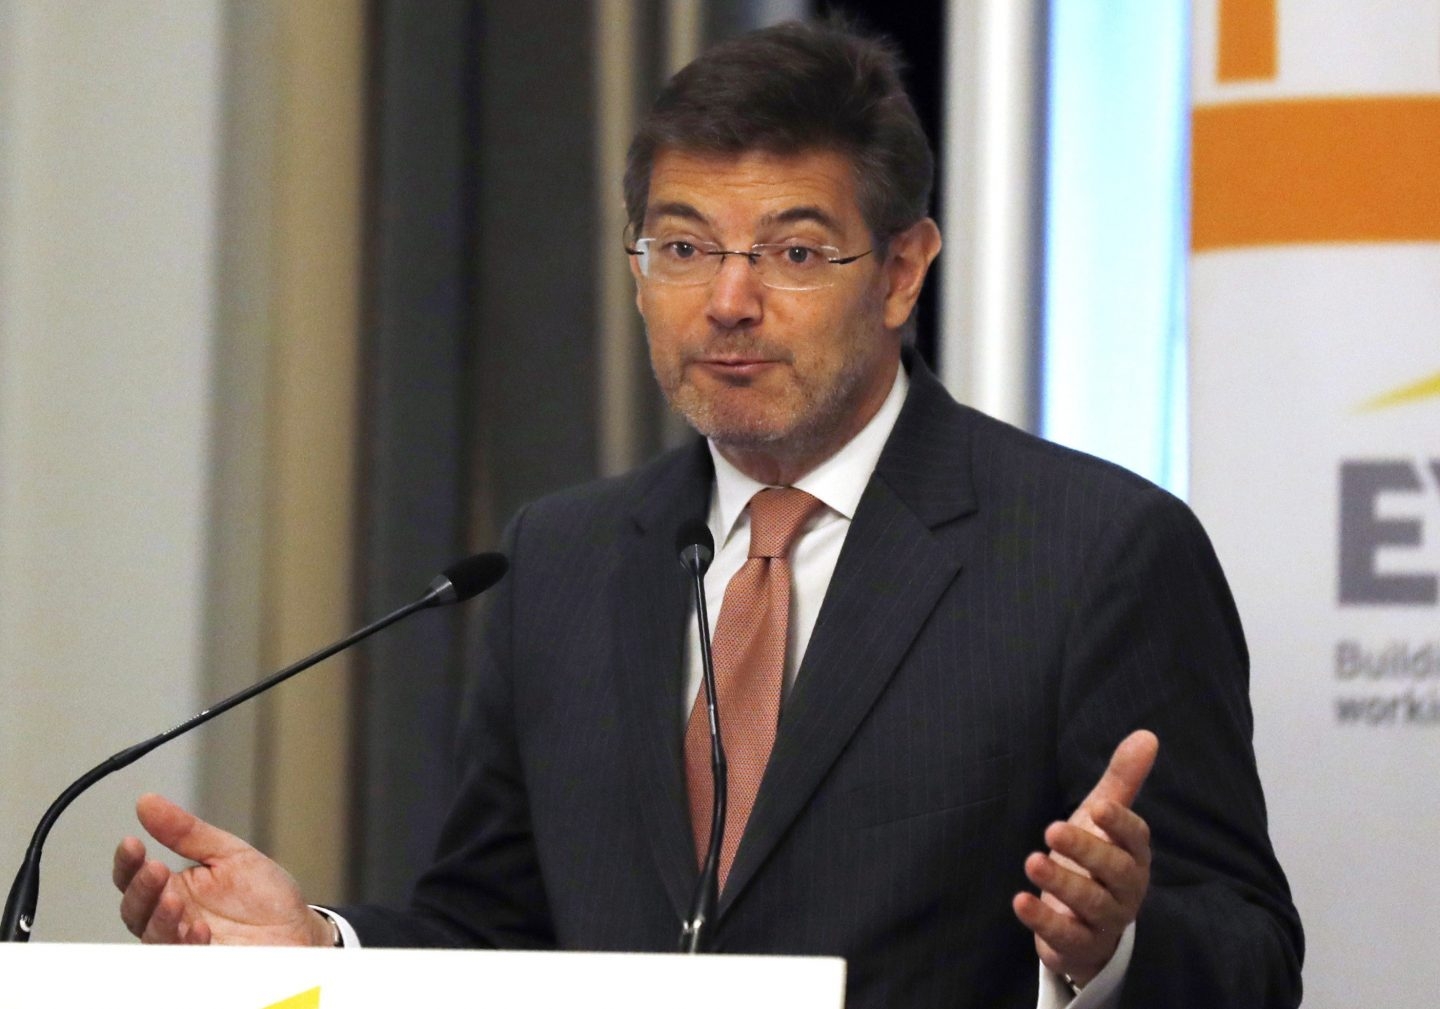 El titular de Justicia, Rafael Catalá, durante su intervención en la mañana del jueves.